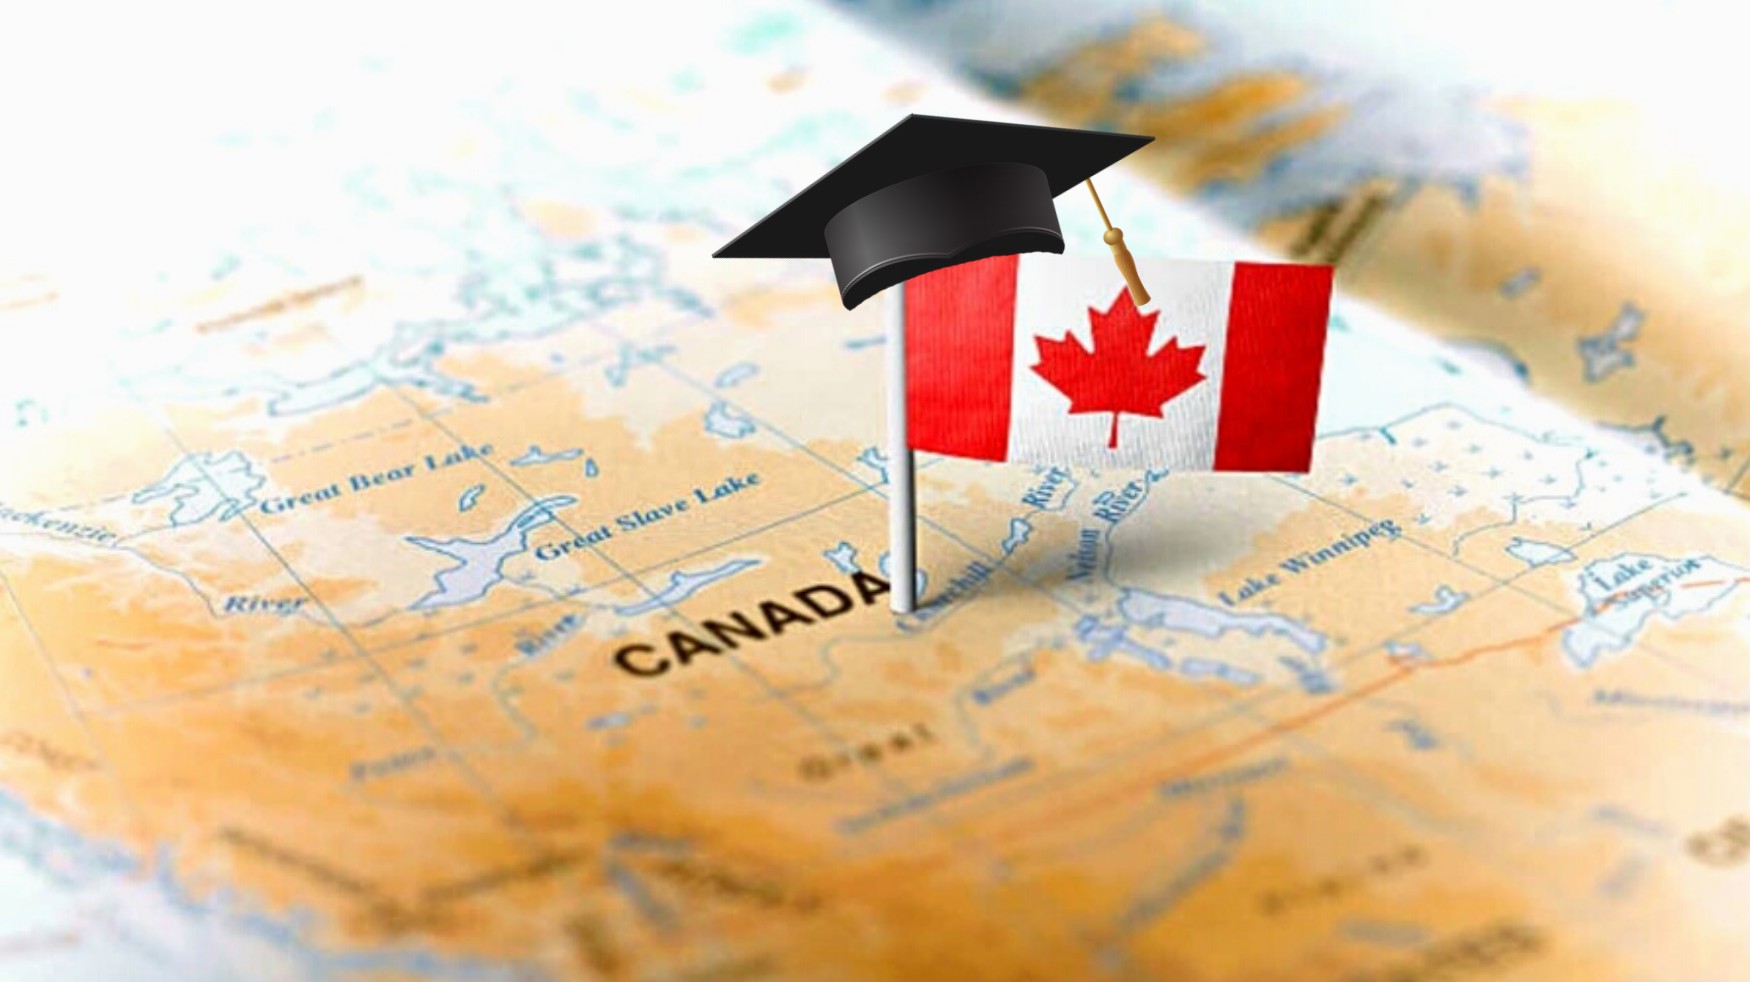  Το 73% των διεθνών φοιτητών σχεδιάζει να μείνει στον Καναδά μετά την αποφοίτηση, αποκαλύπτει νέα επίσημη έρευνα